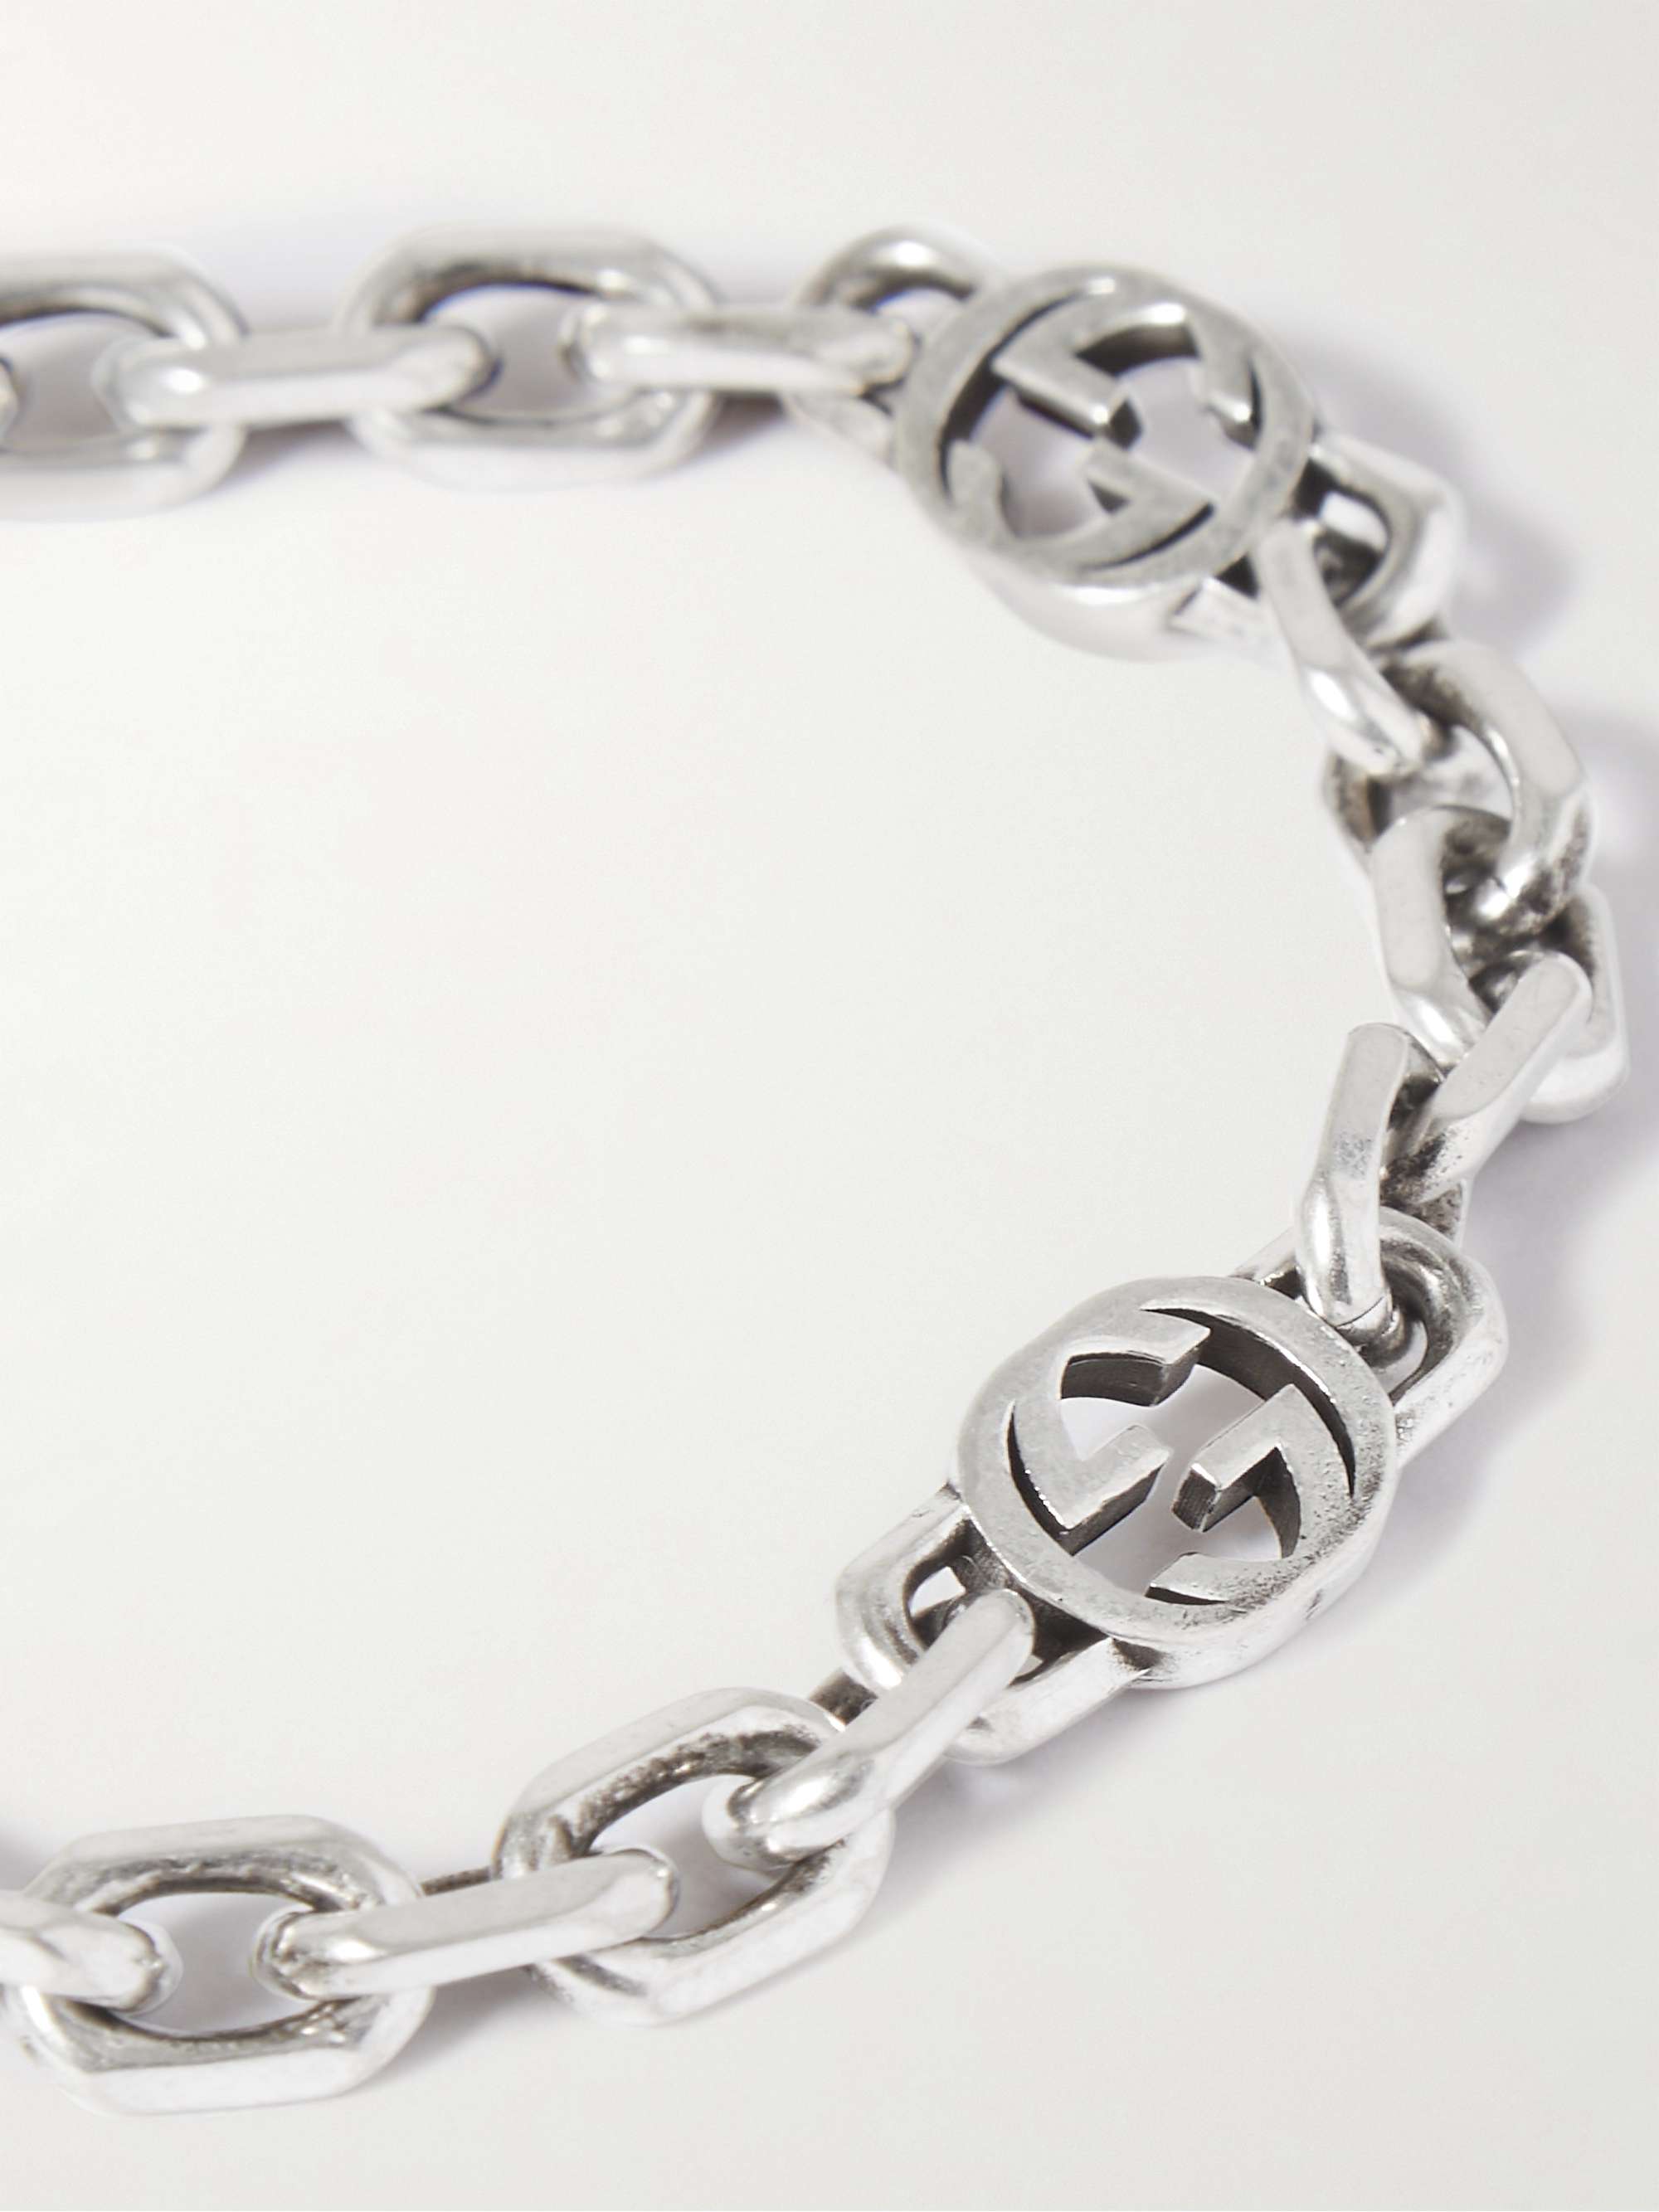 Silver Silver Chain Bracelet | GUCCI | MR PORTER